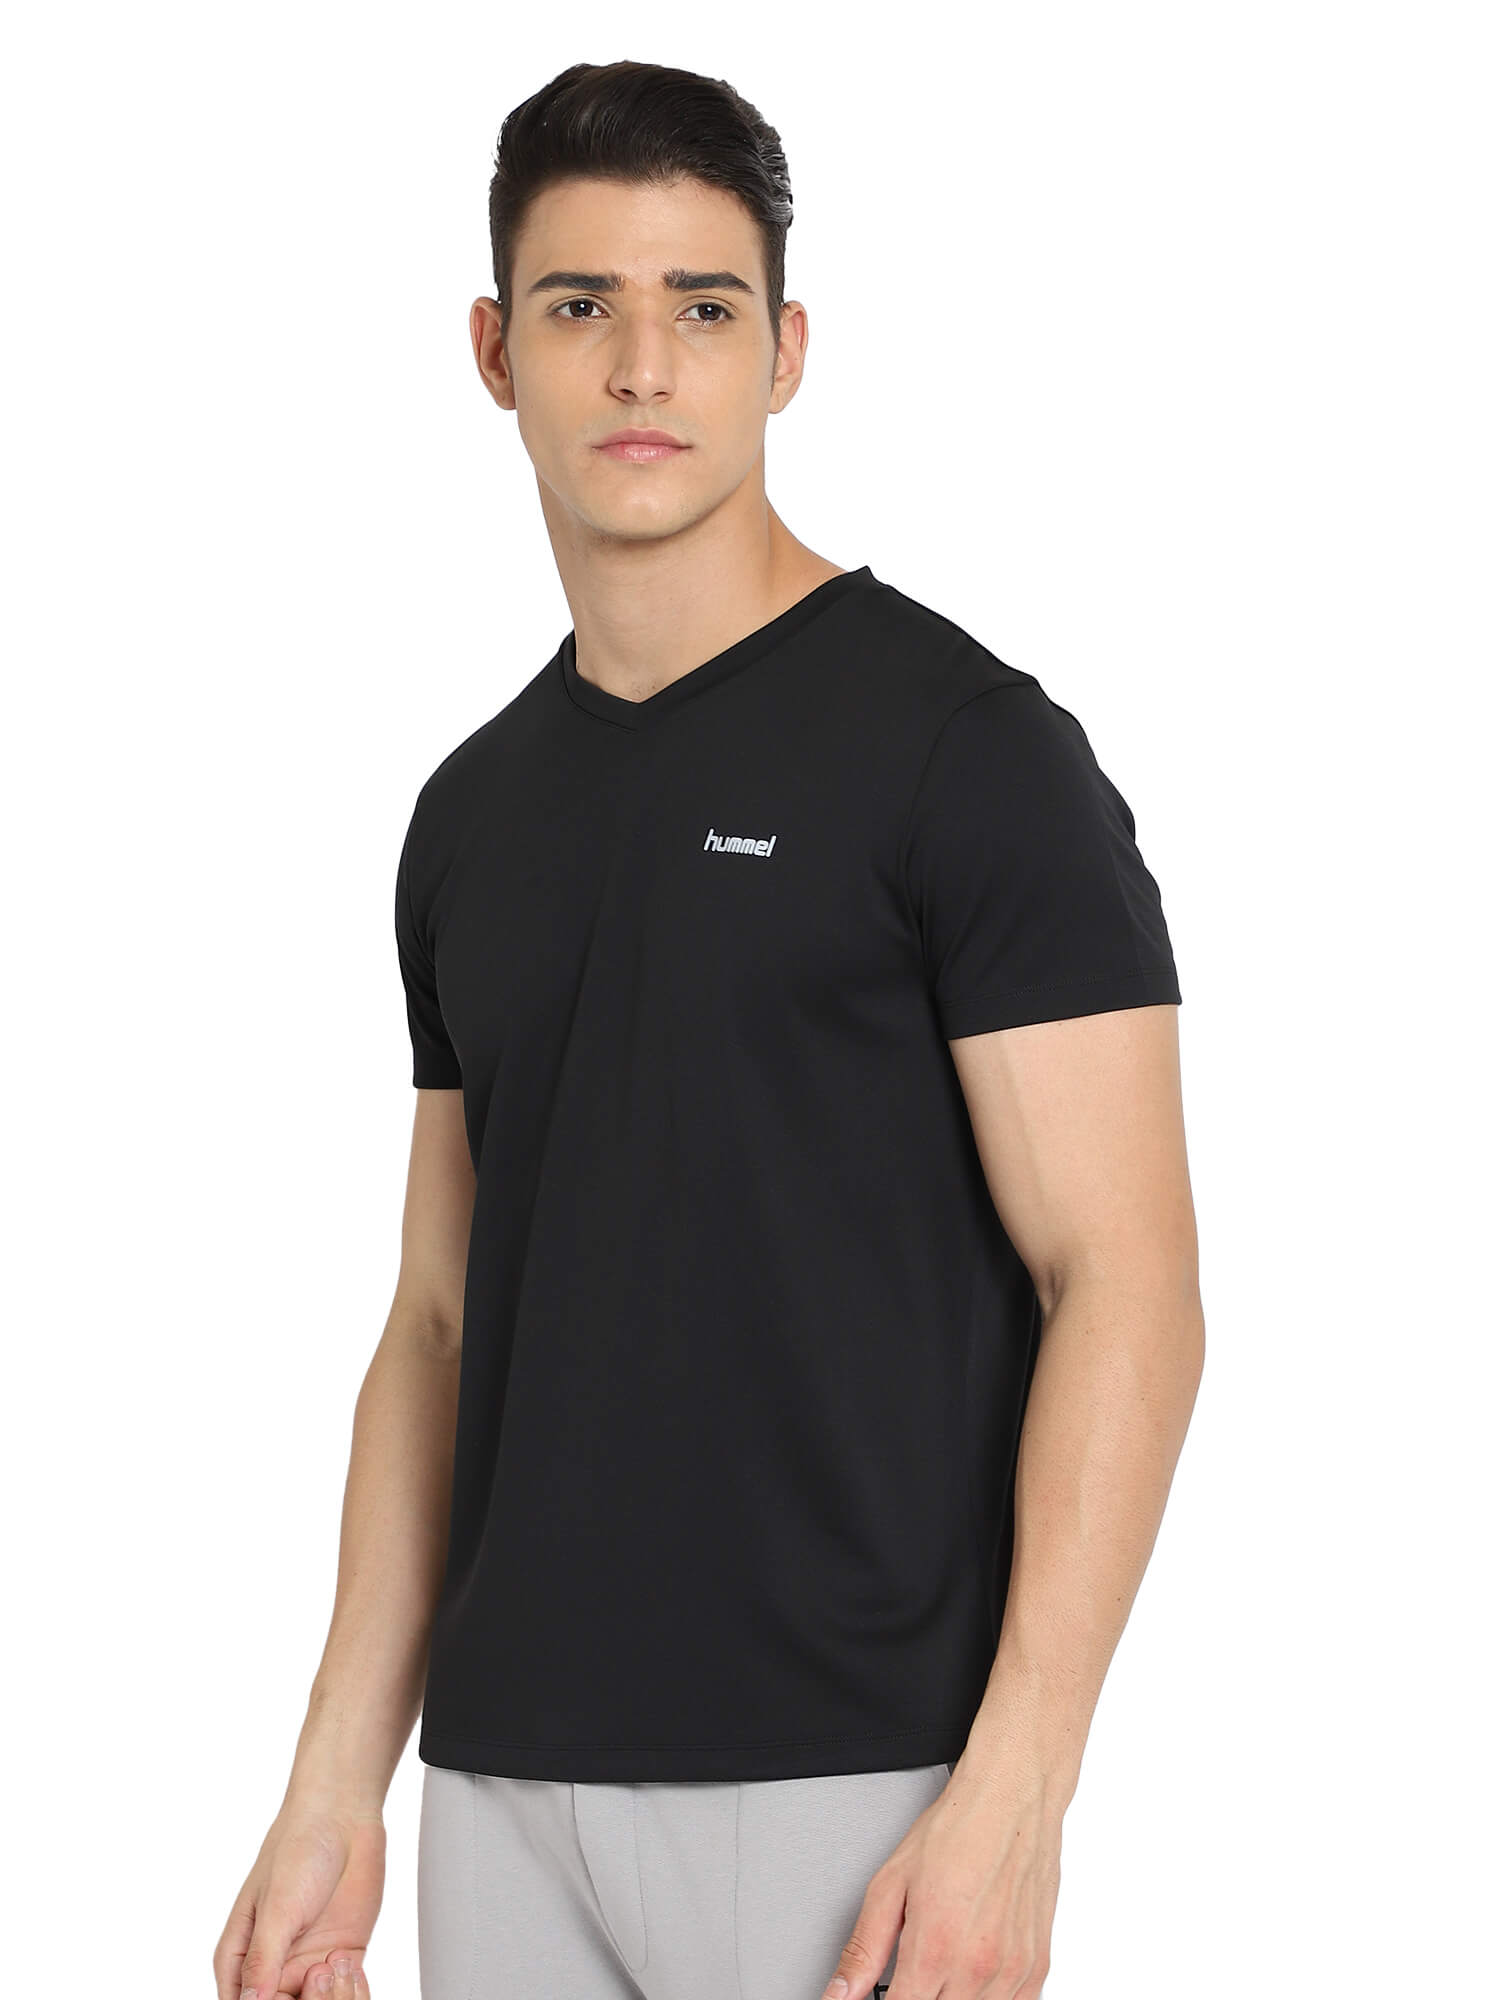 Amero Black T-Shirts for Men